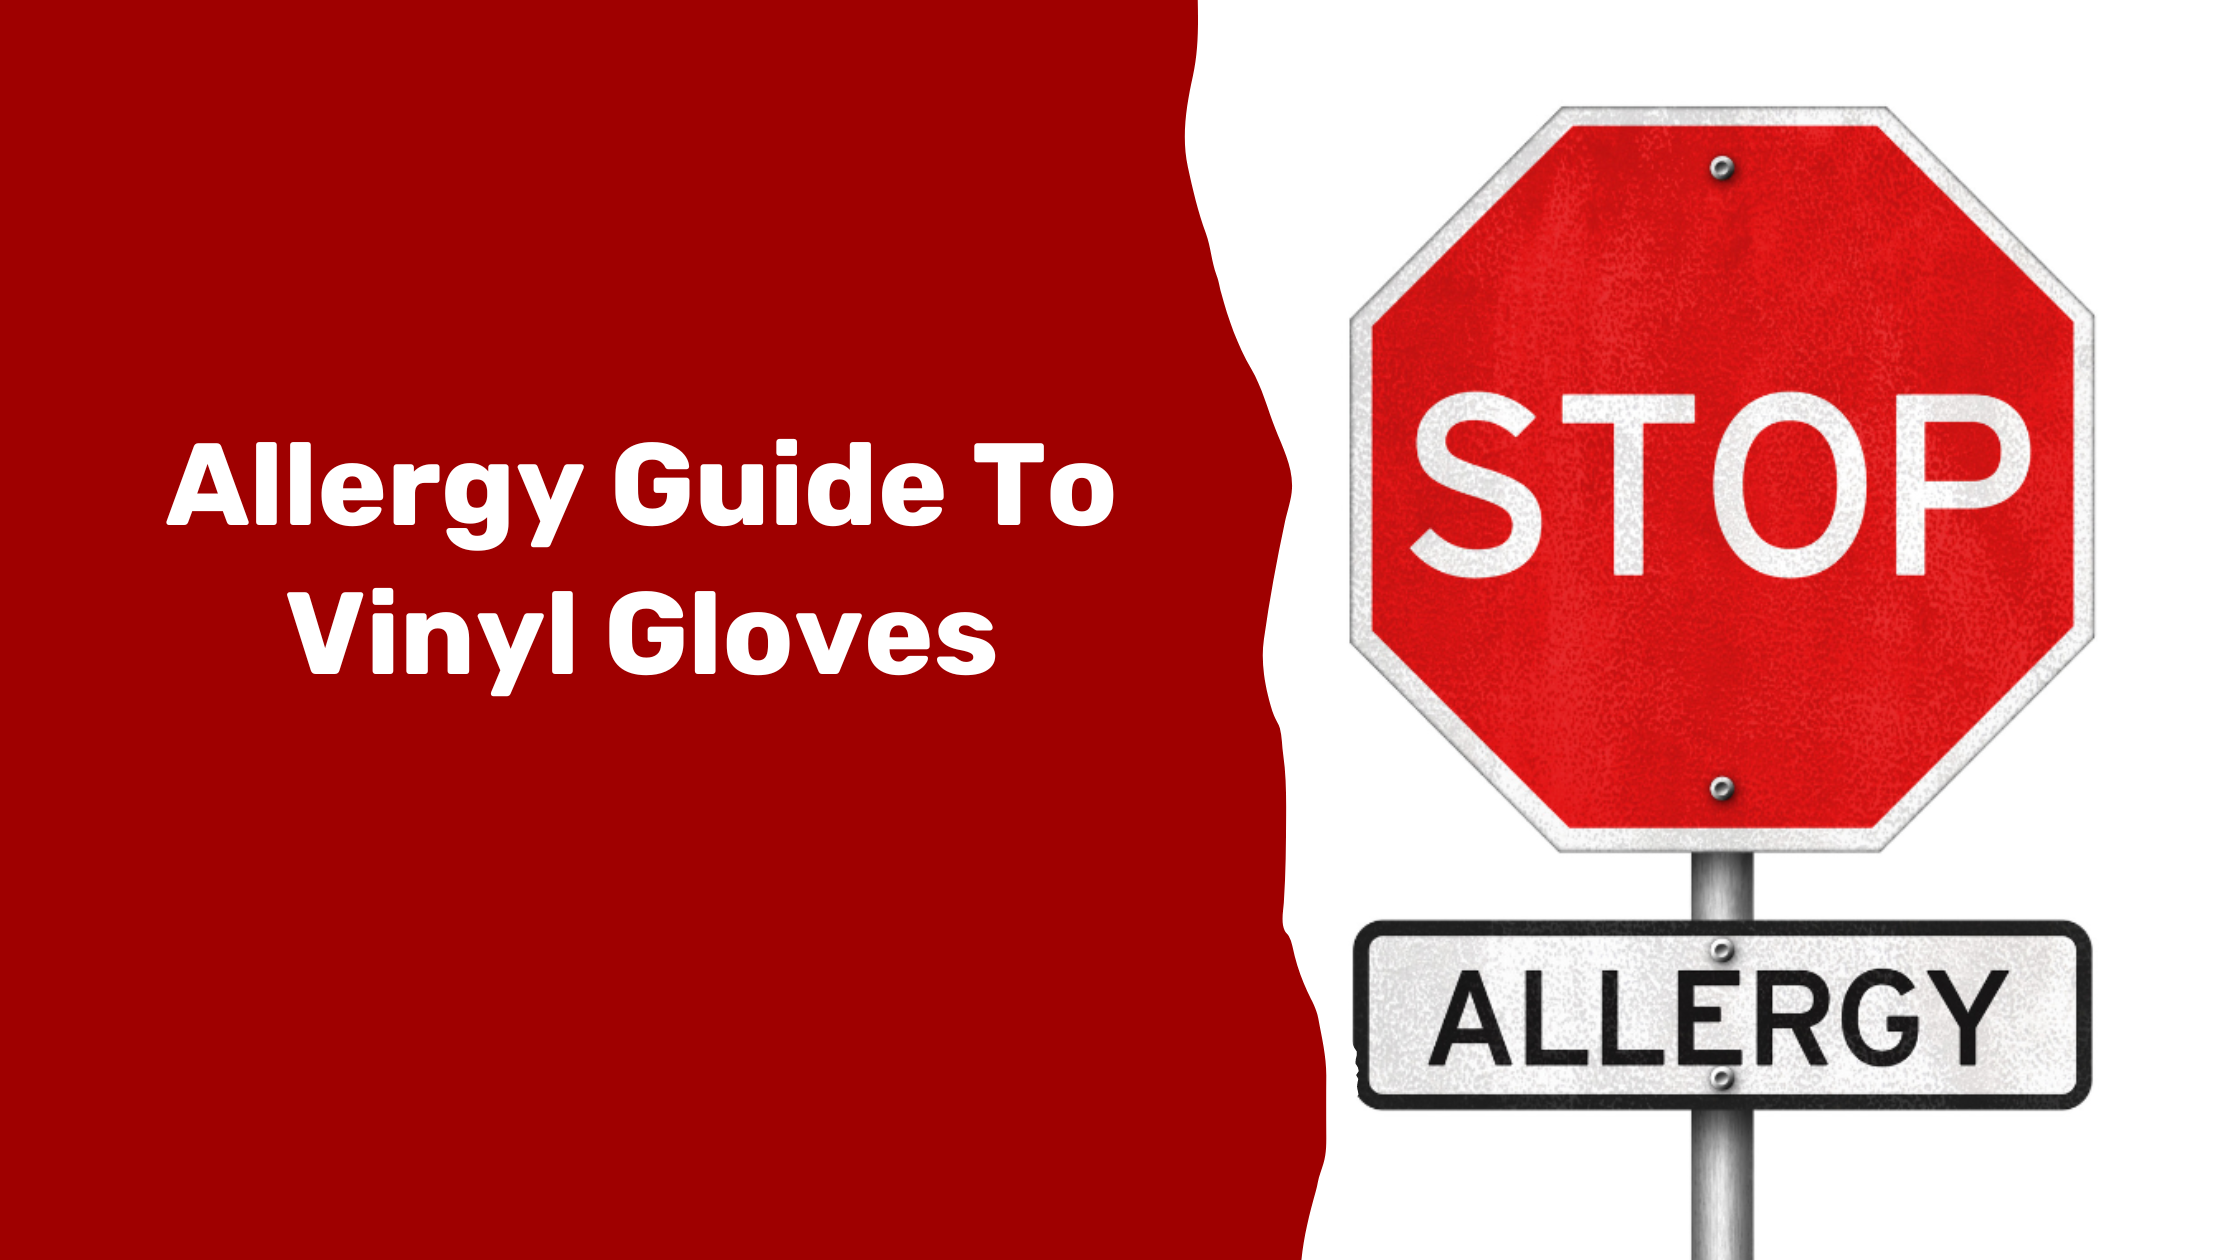 Allergy Guide To Vinyl Gloves